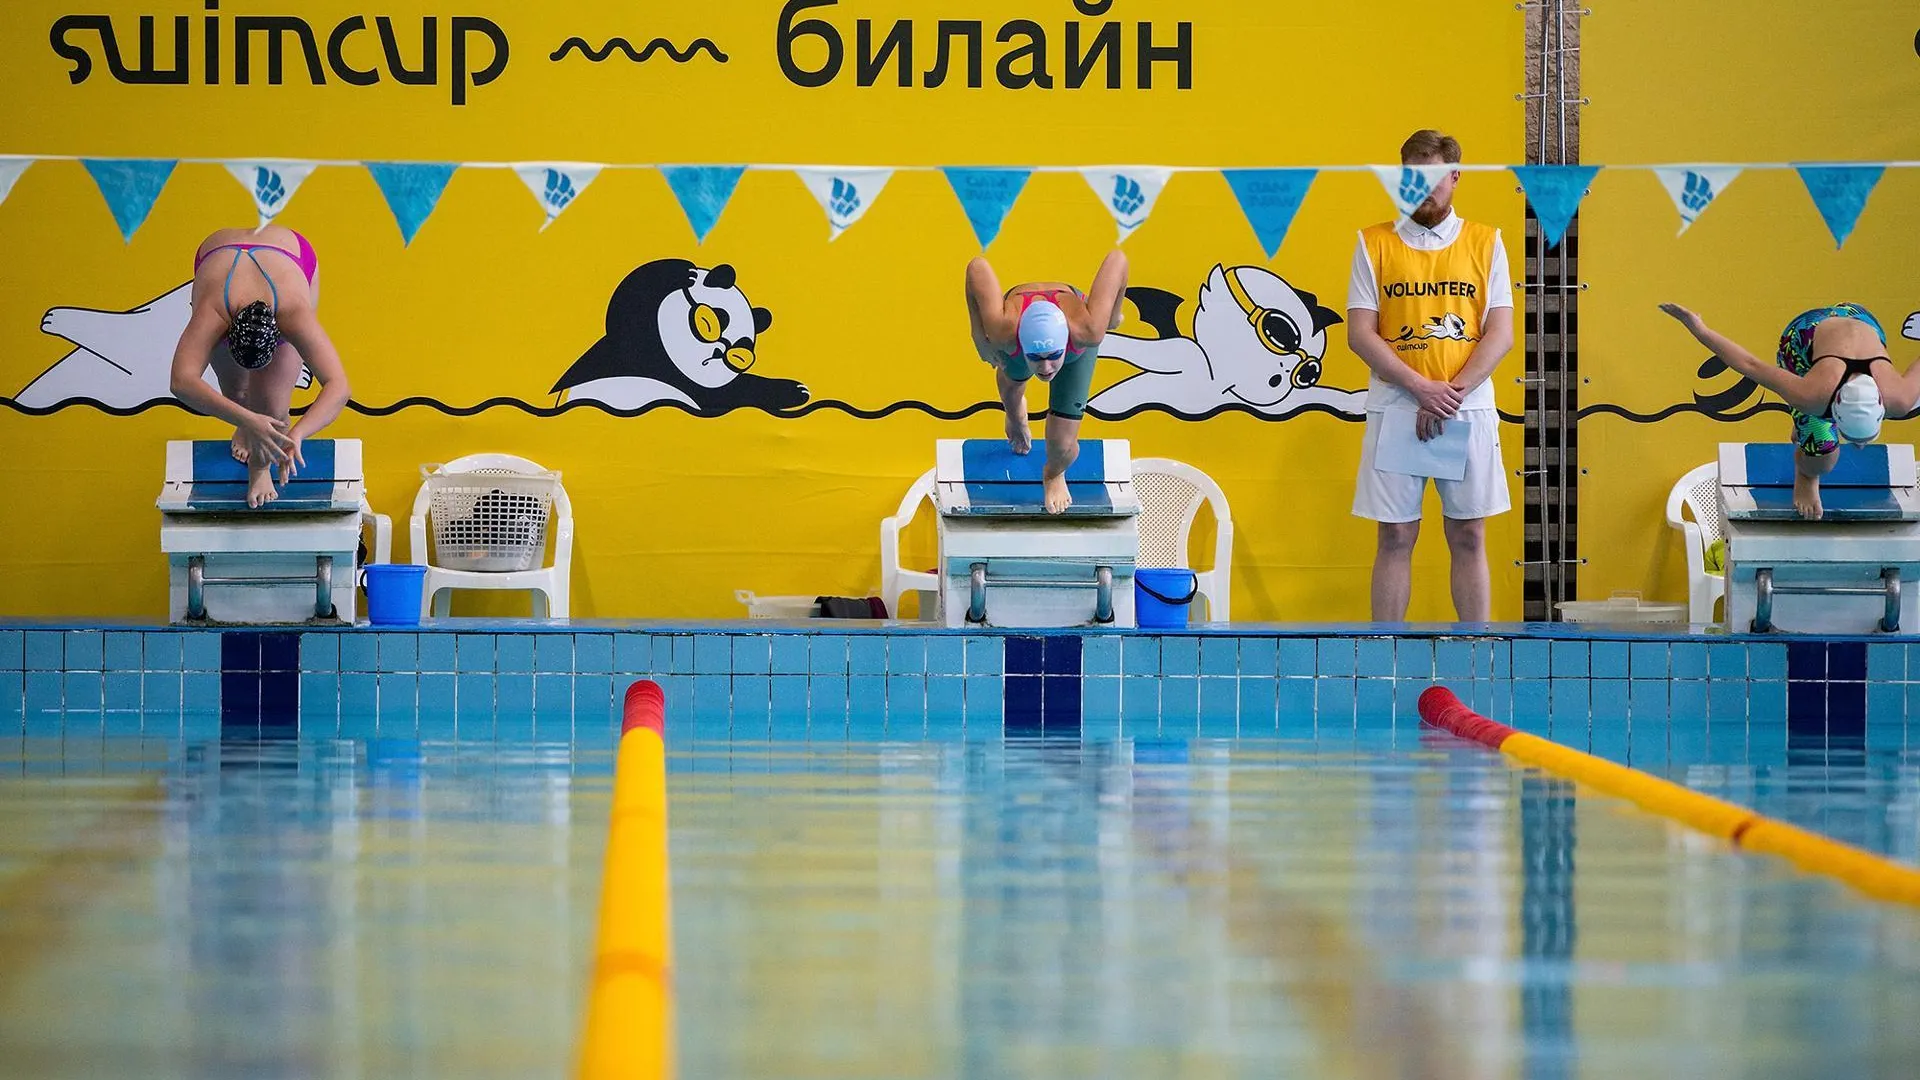 В Подмосковье до апреля пройдут 4 турнира по плаванию международной серии Swimcup